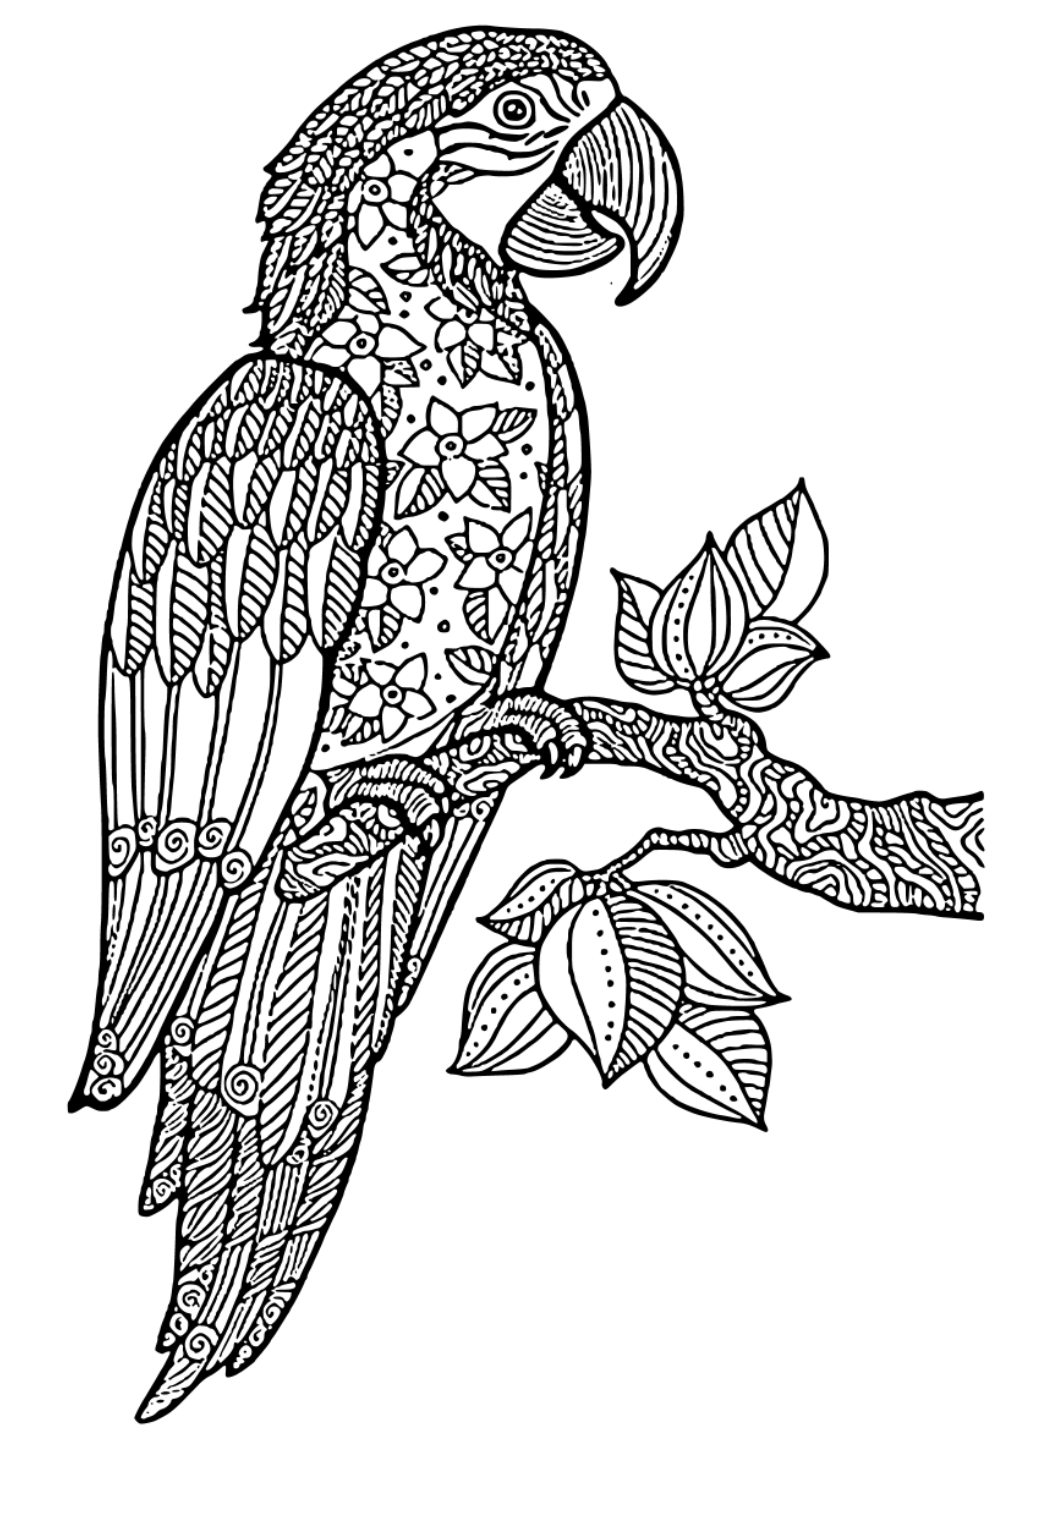 Darmowa kolorowanka papuga trudny do druku dla dorosåych i dzieci